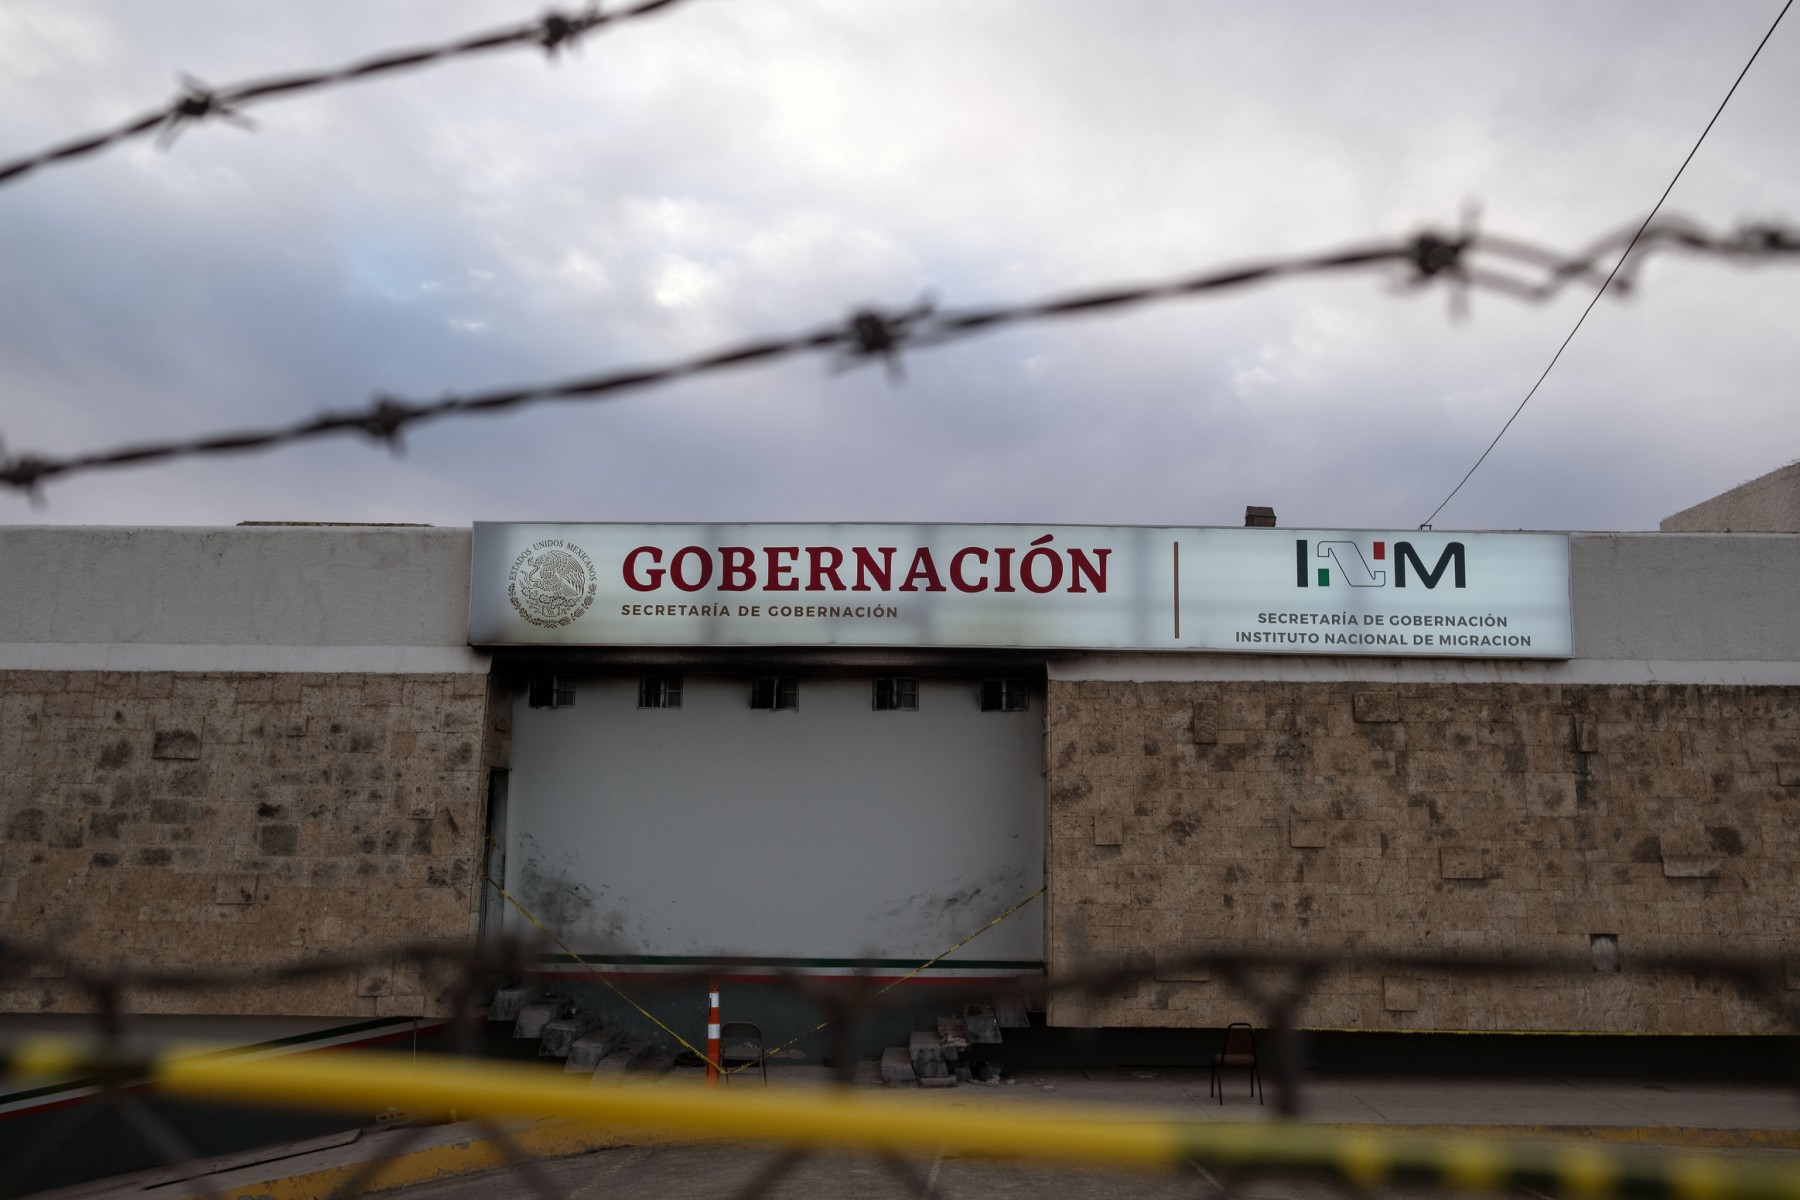 En Cd. Juárez, los migrantes enfrentan detenciones arbitrarias y encierros de hasta 9 meses